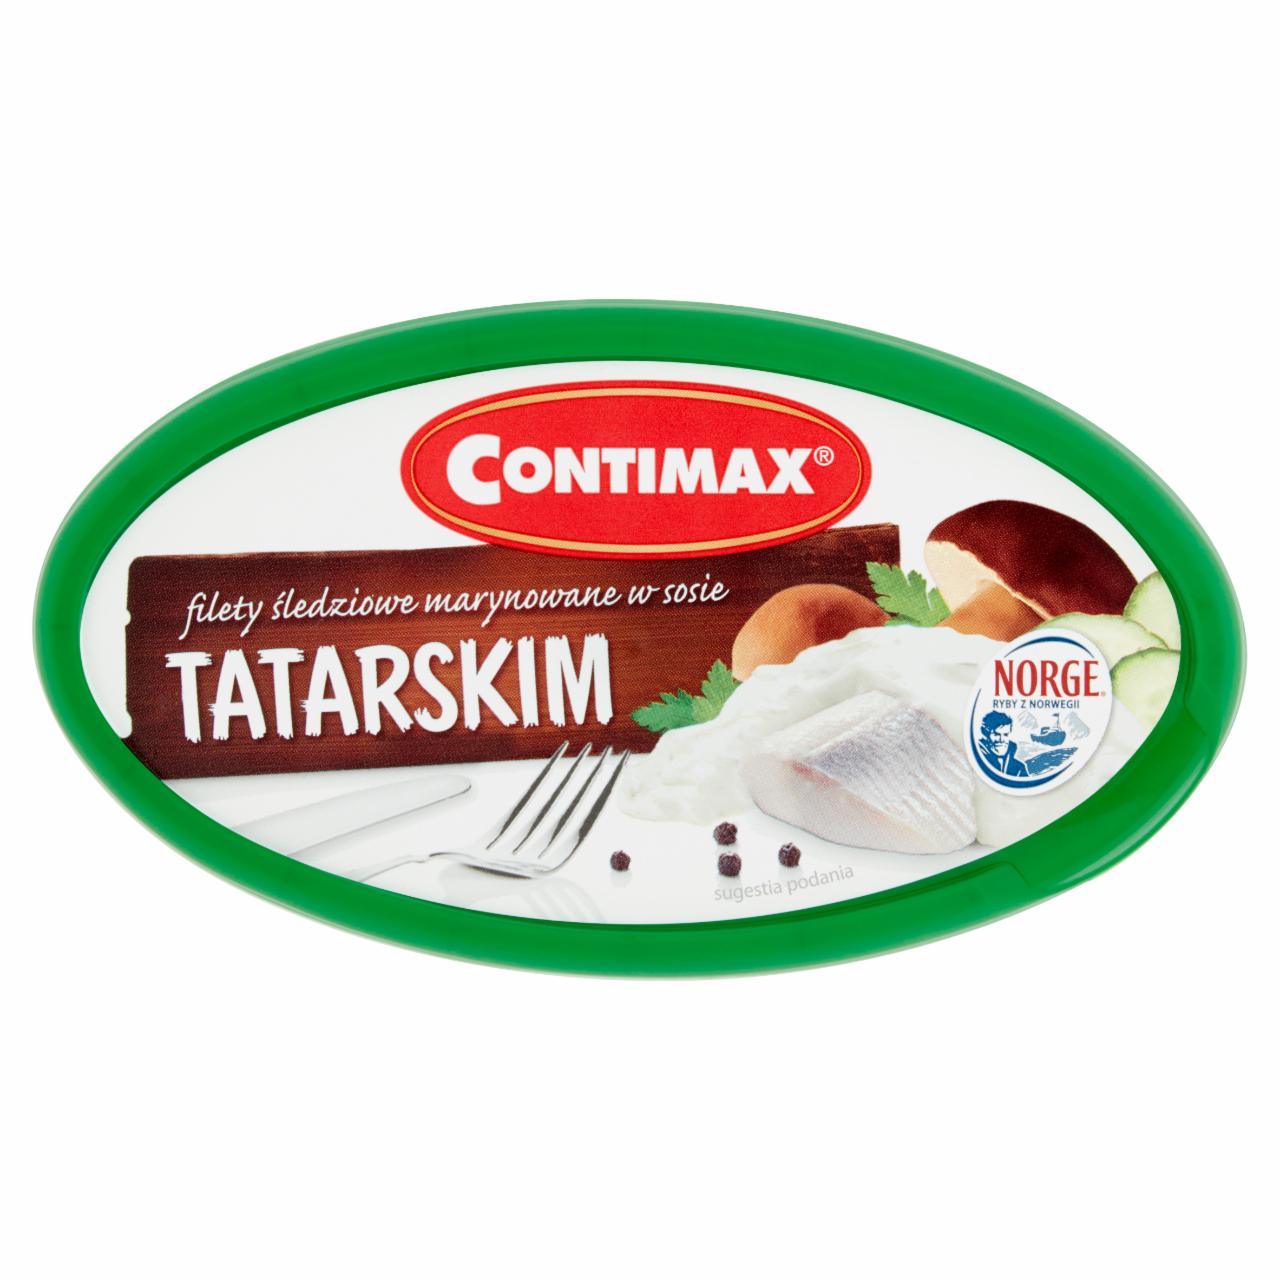 Zdjęcia - Contimax Filety śledziowe marynowane w sosie tatarskim 300 g